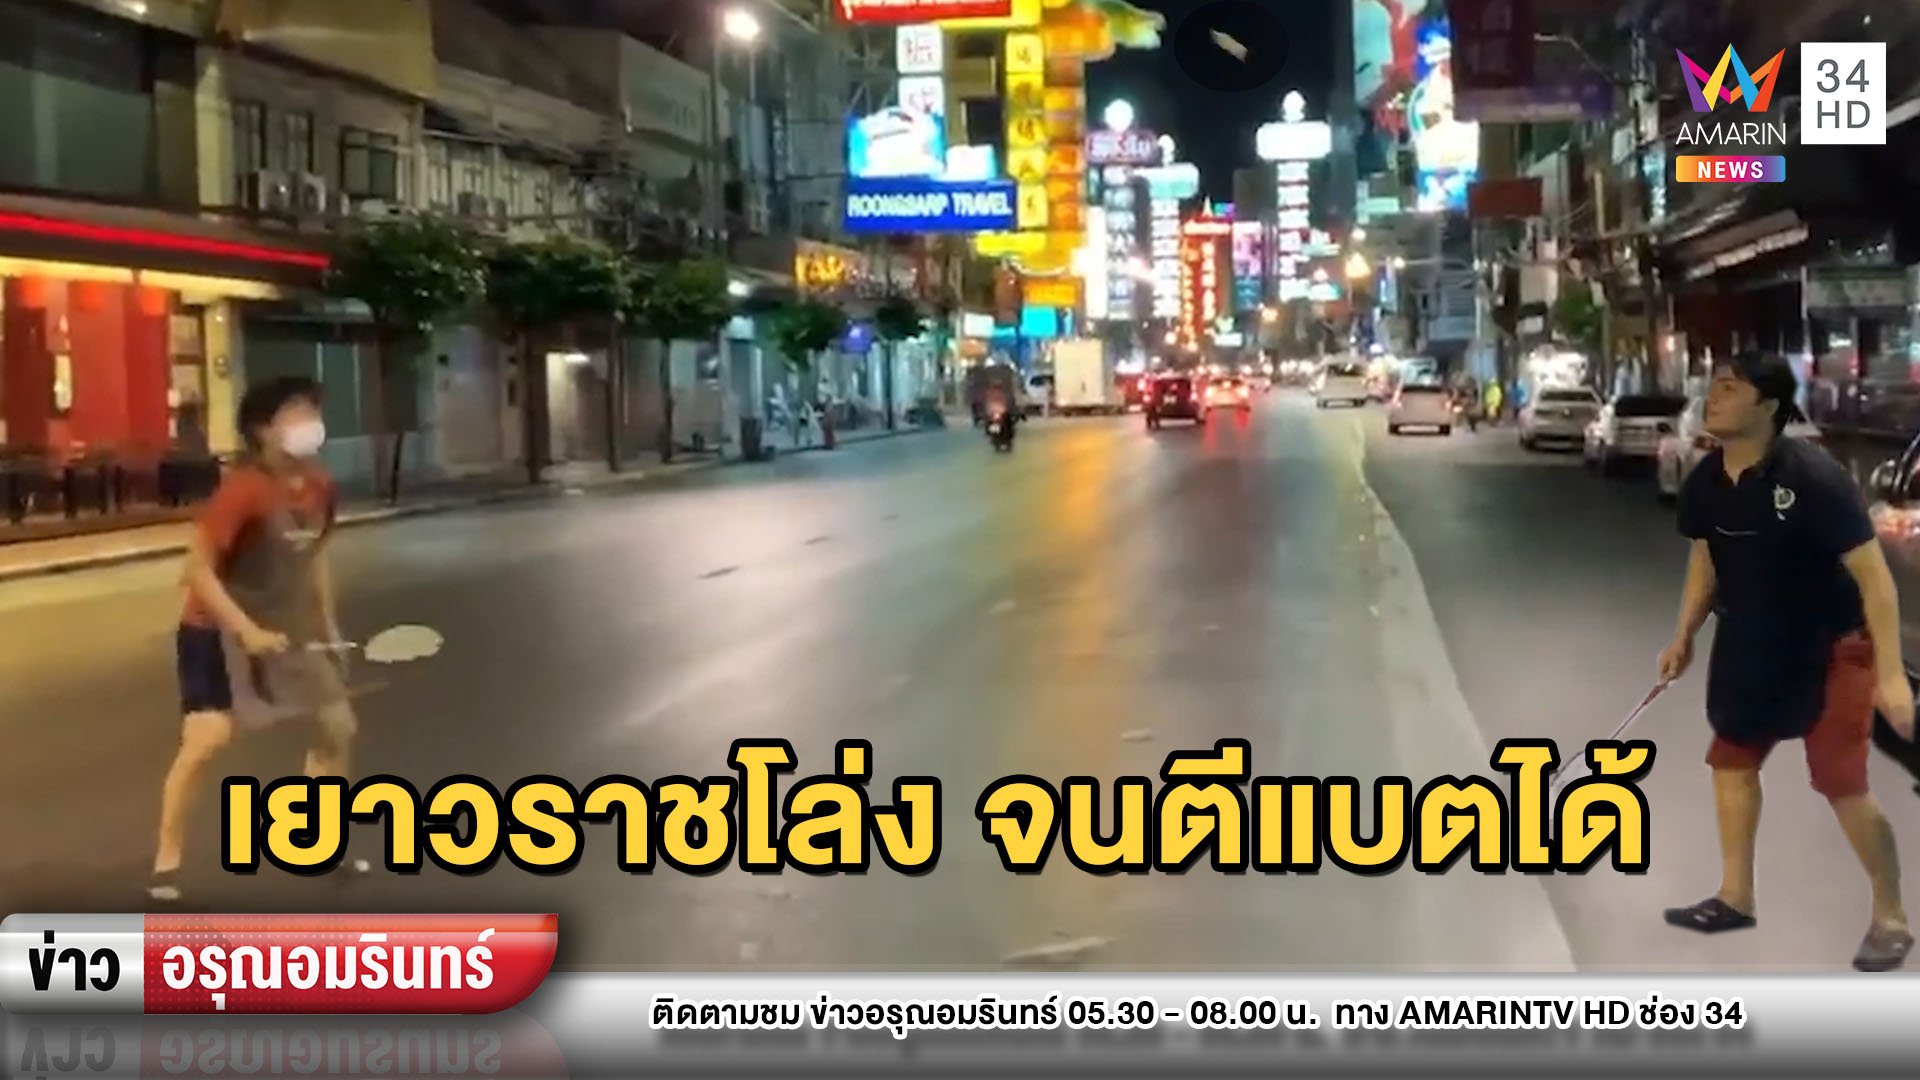 เงียบเหงา! “ถนนเยาวราช” ไร้นักท่องเที่ยว โล่งจนตีแบตฯได้ | ข่าวอรุณอมรินทร์ | 1 เม.ย. 63 | AMARIN TVHD34